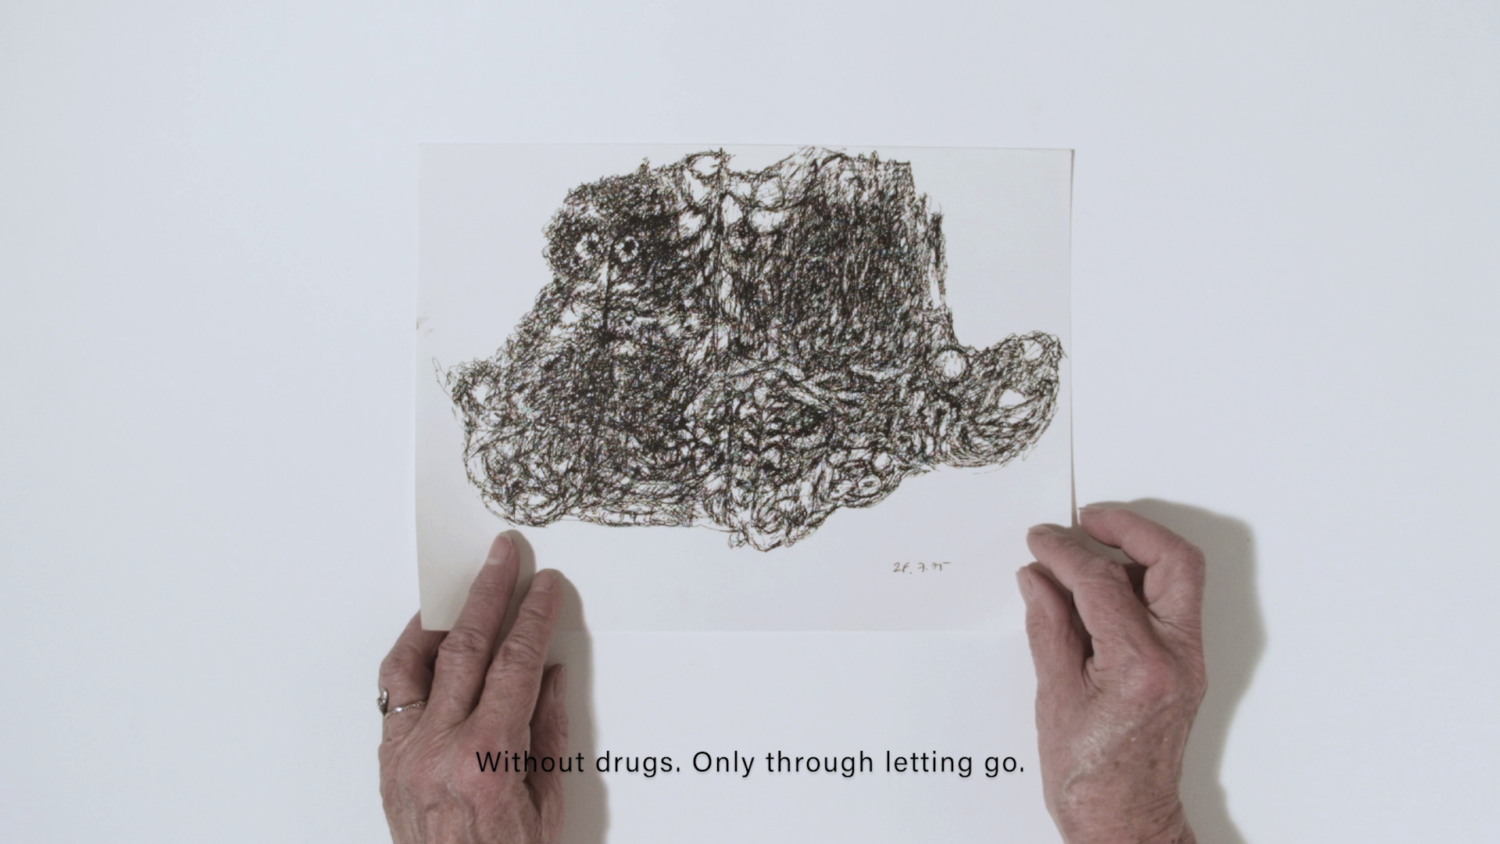 Filmstill aus "Es gibt". Man sieht Hände einer älteren Frau, die ein Papier mit einer Zeichnung halten. Darunter stehen die Worte "Without drugs. Only through letting go"